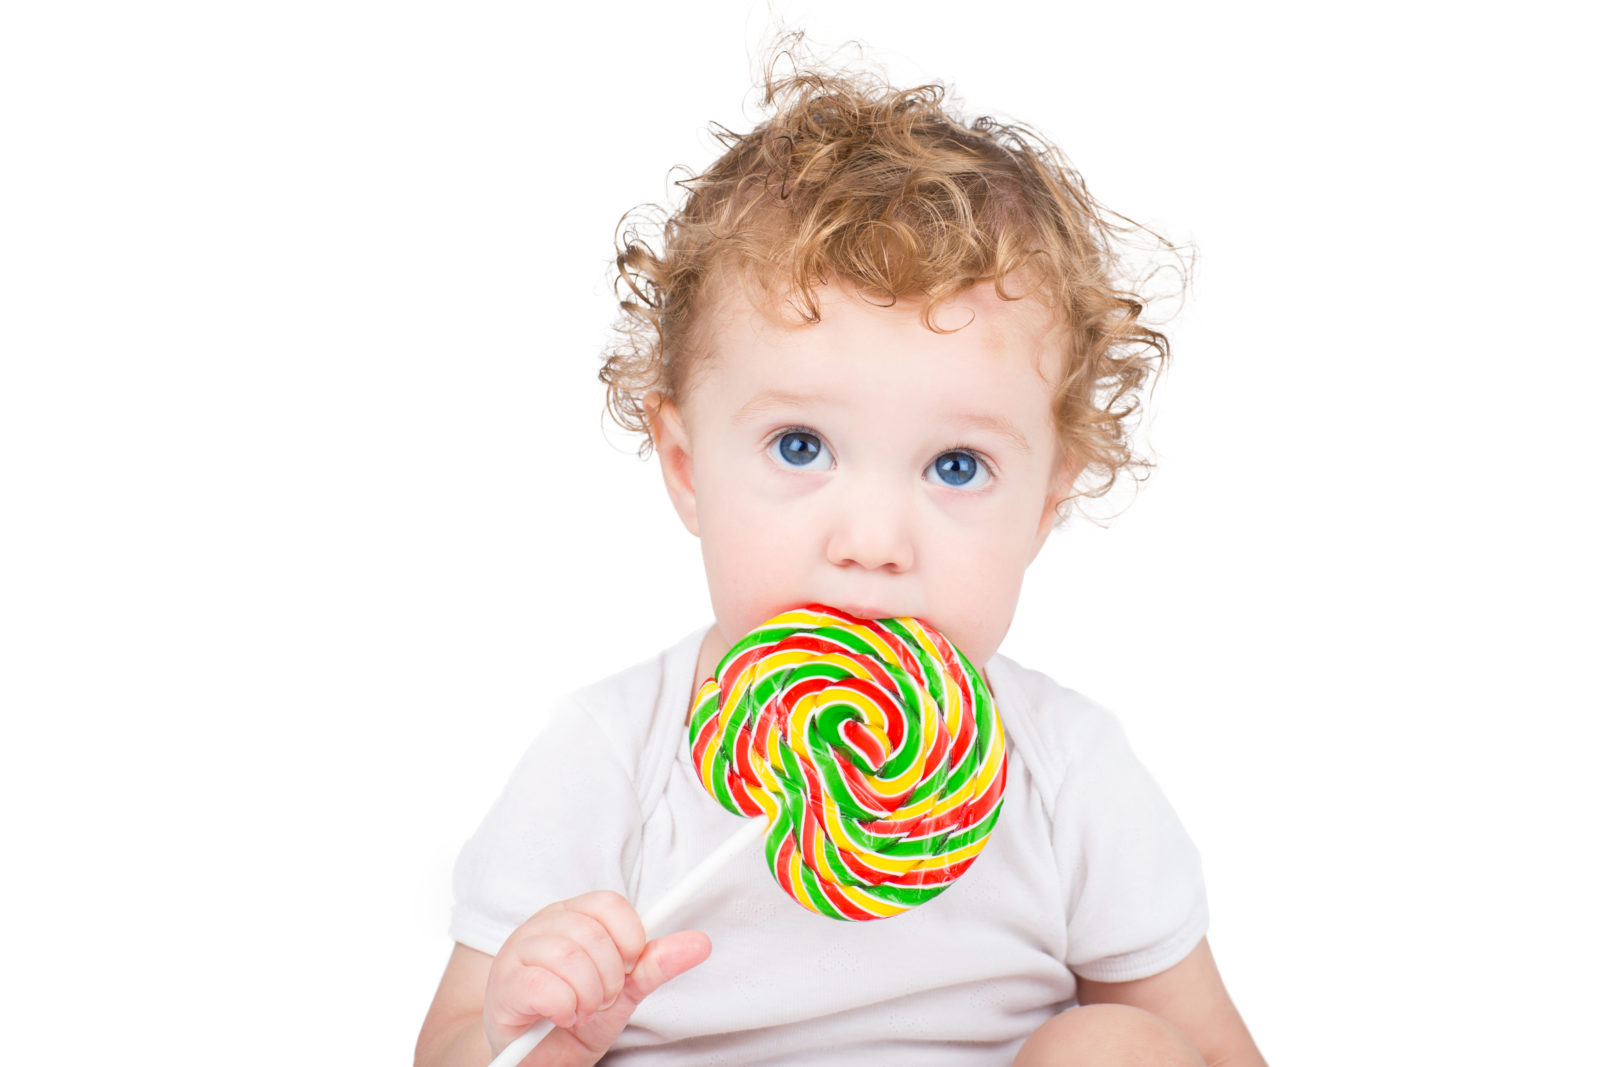 NOLL tillsatt socker för barn under två år, rekommenderar American Heart Association